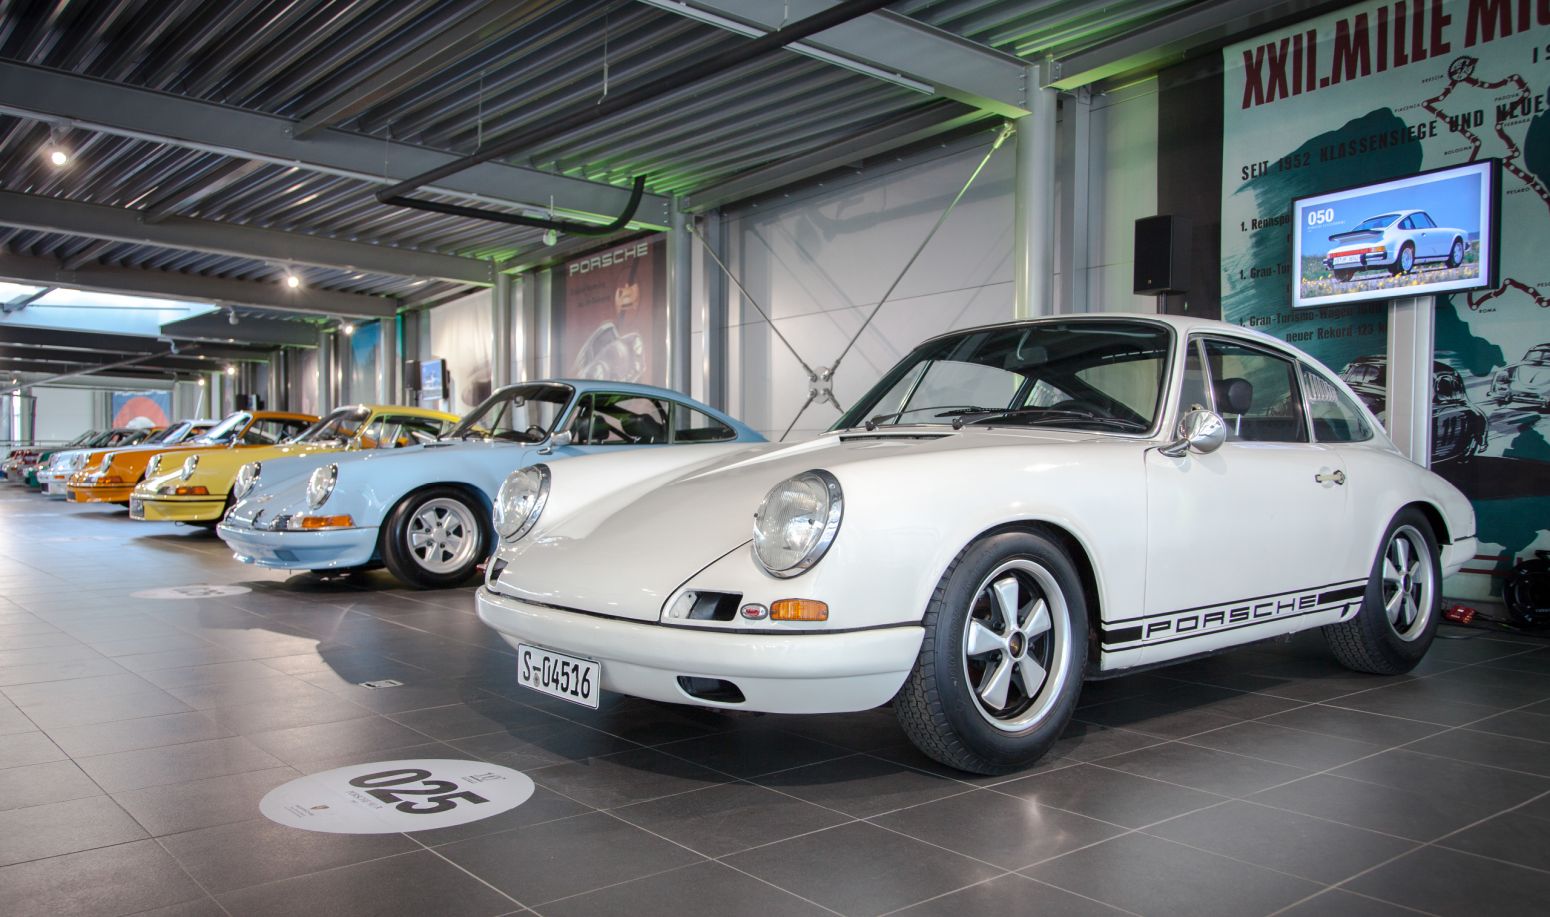 Porsche Centrum Gelderland - AGH & Friends